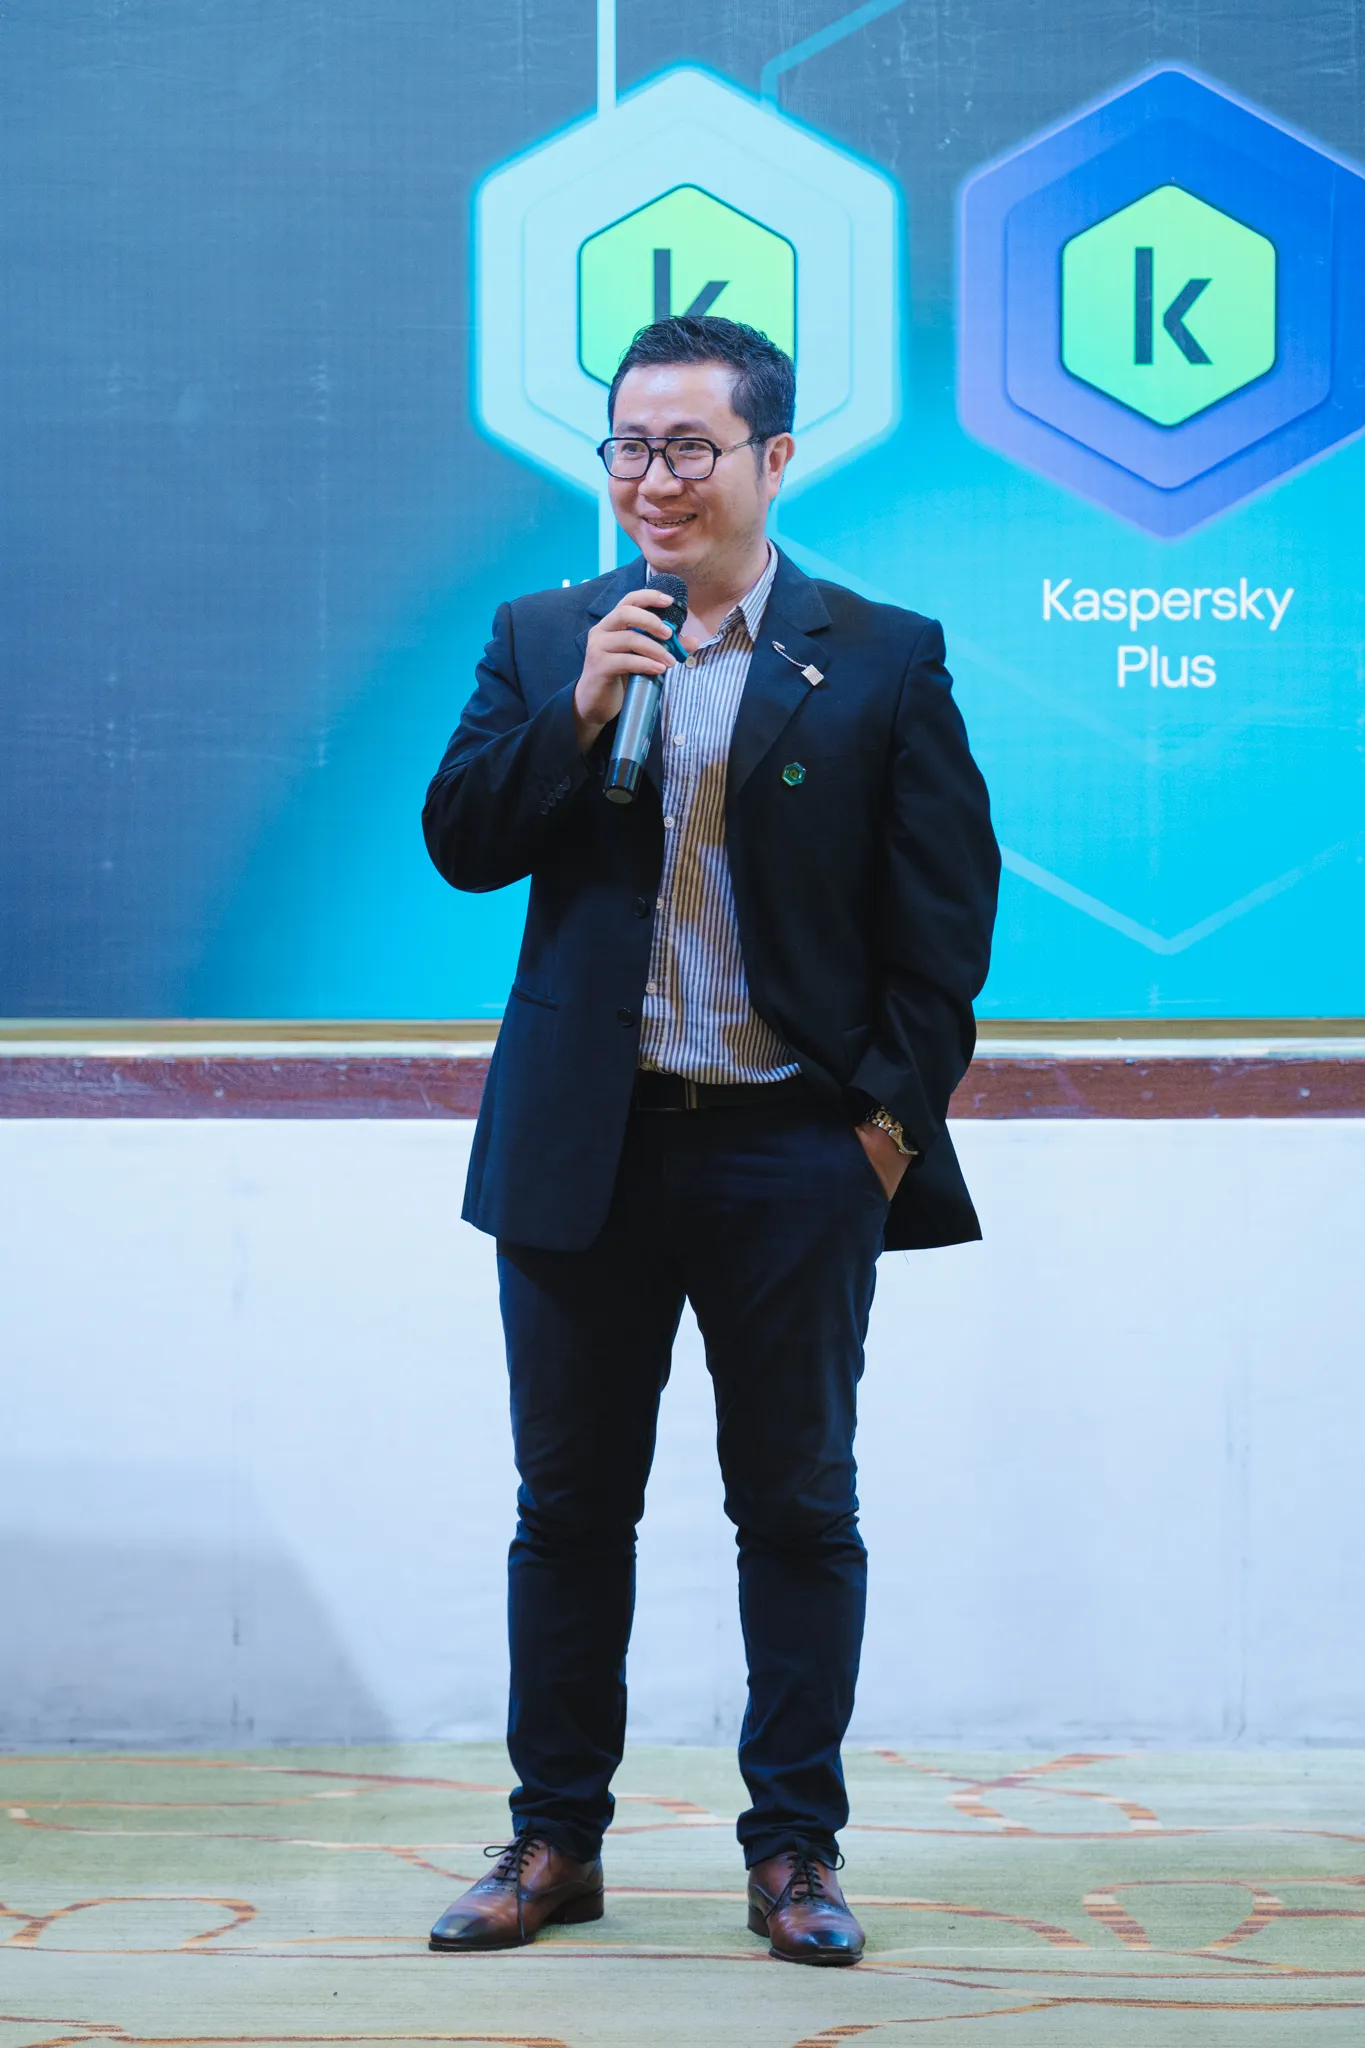 Kaspersky ra mắt danh mục sản phẩm mới tại Việt Nam: Bảo vệ toàn diện cho cuộc sống số của người dùng